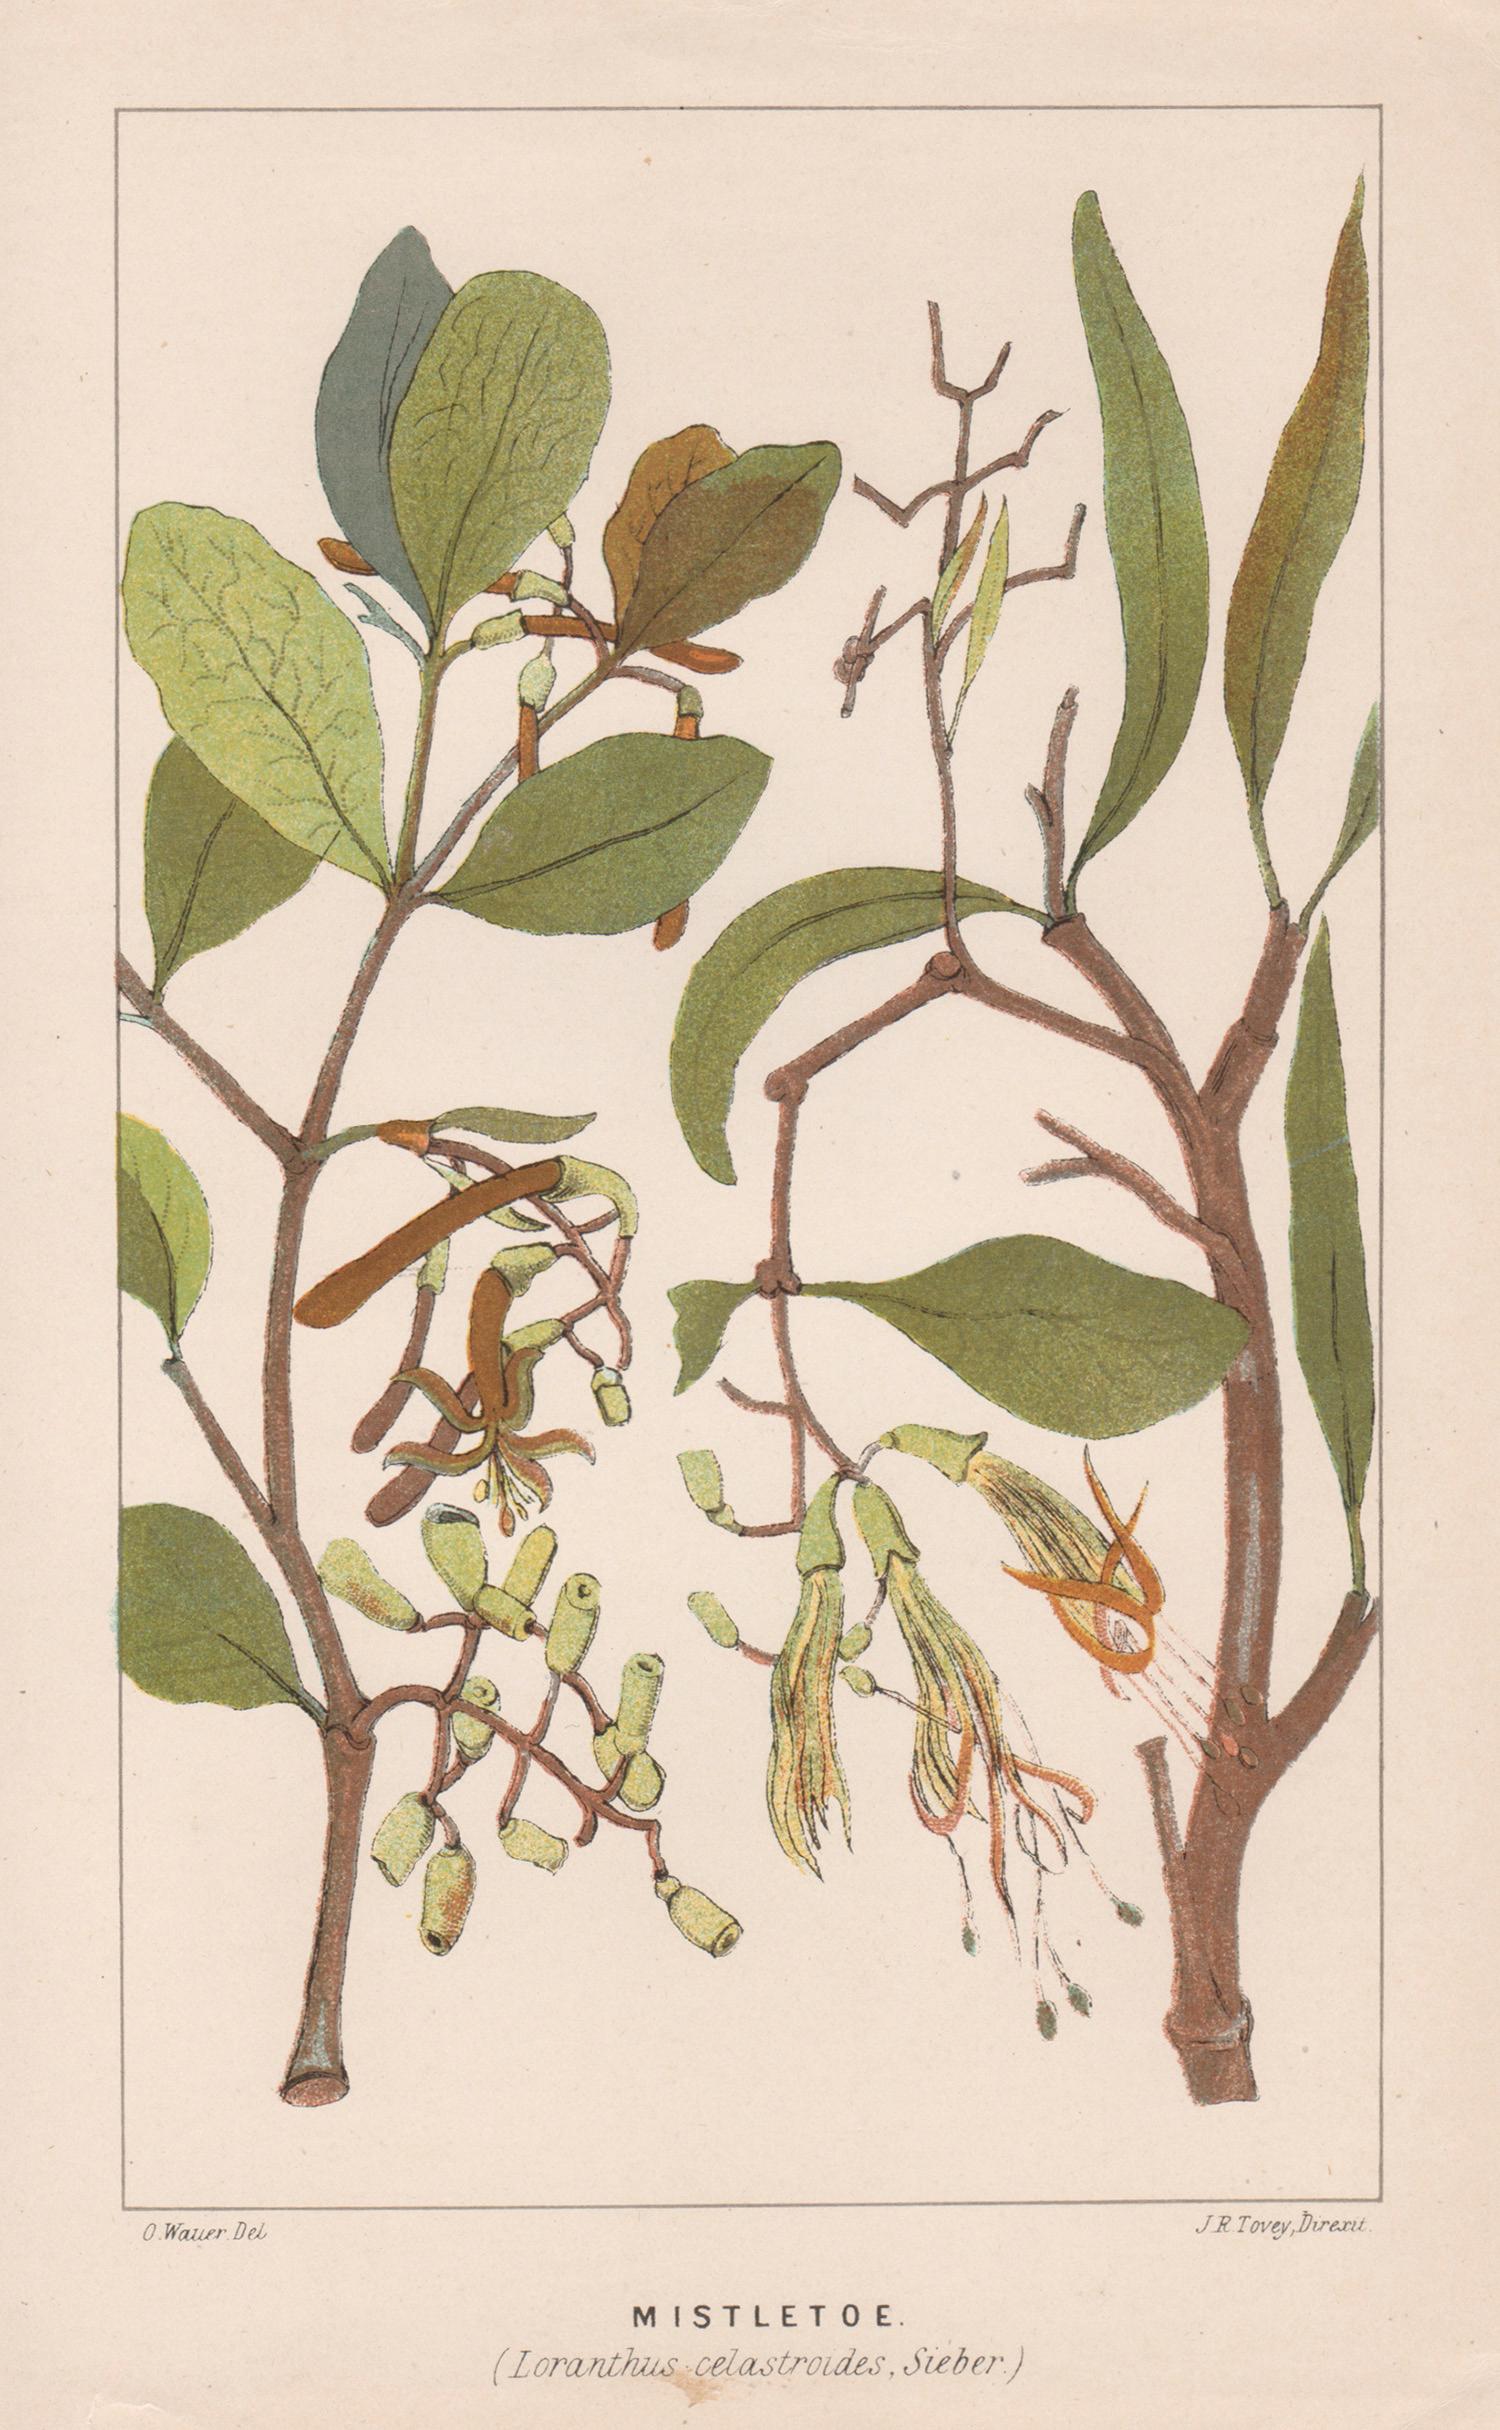 O Wauer Print - Mistletoe (Loranthus celastroides), antique botanical lithograph